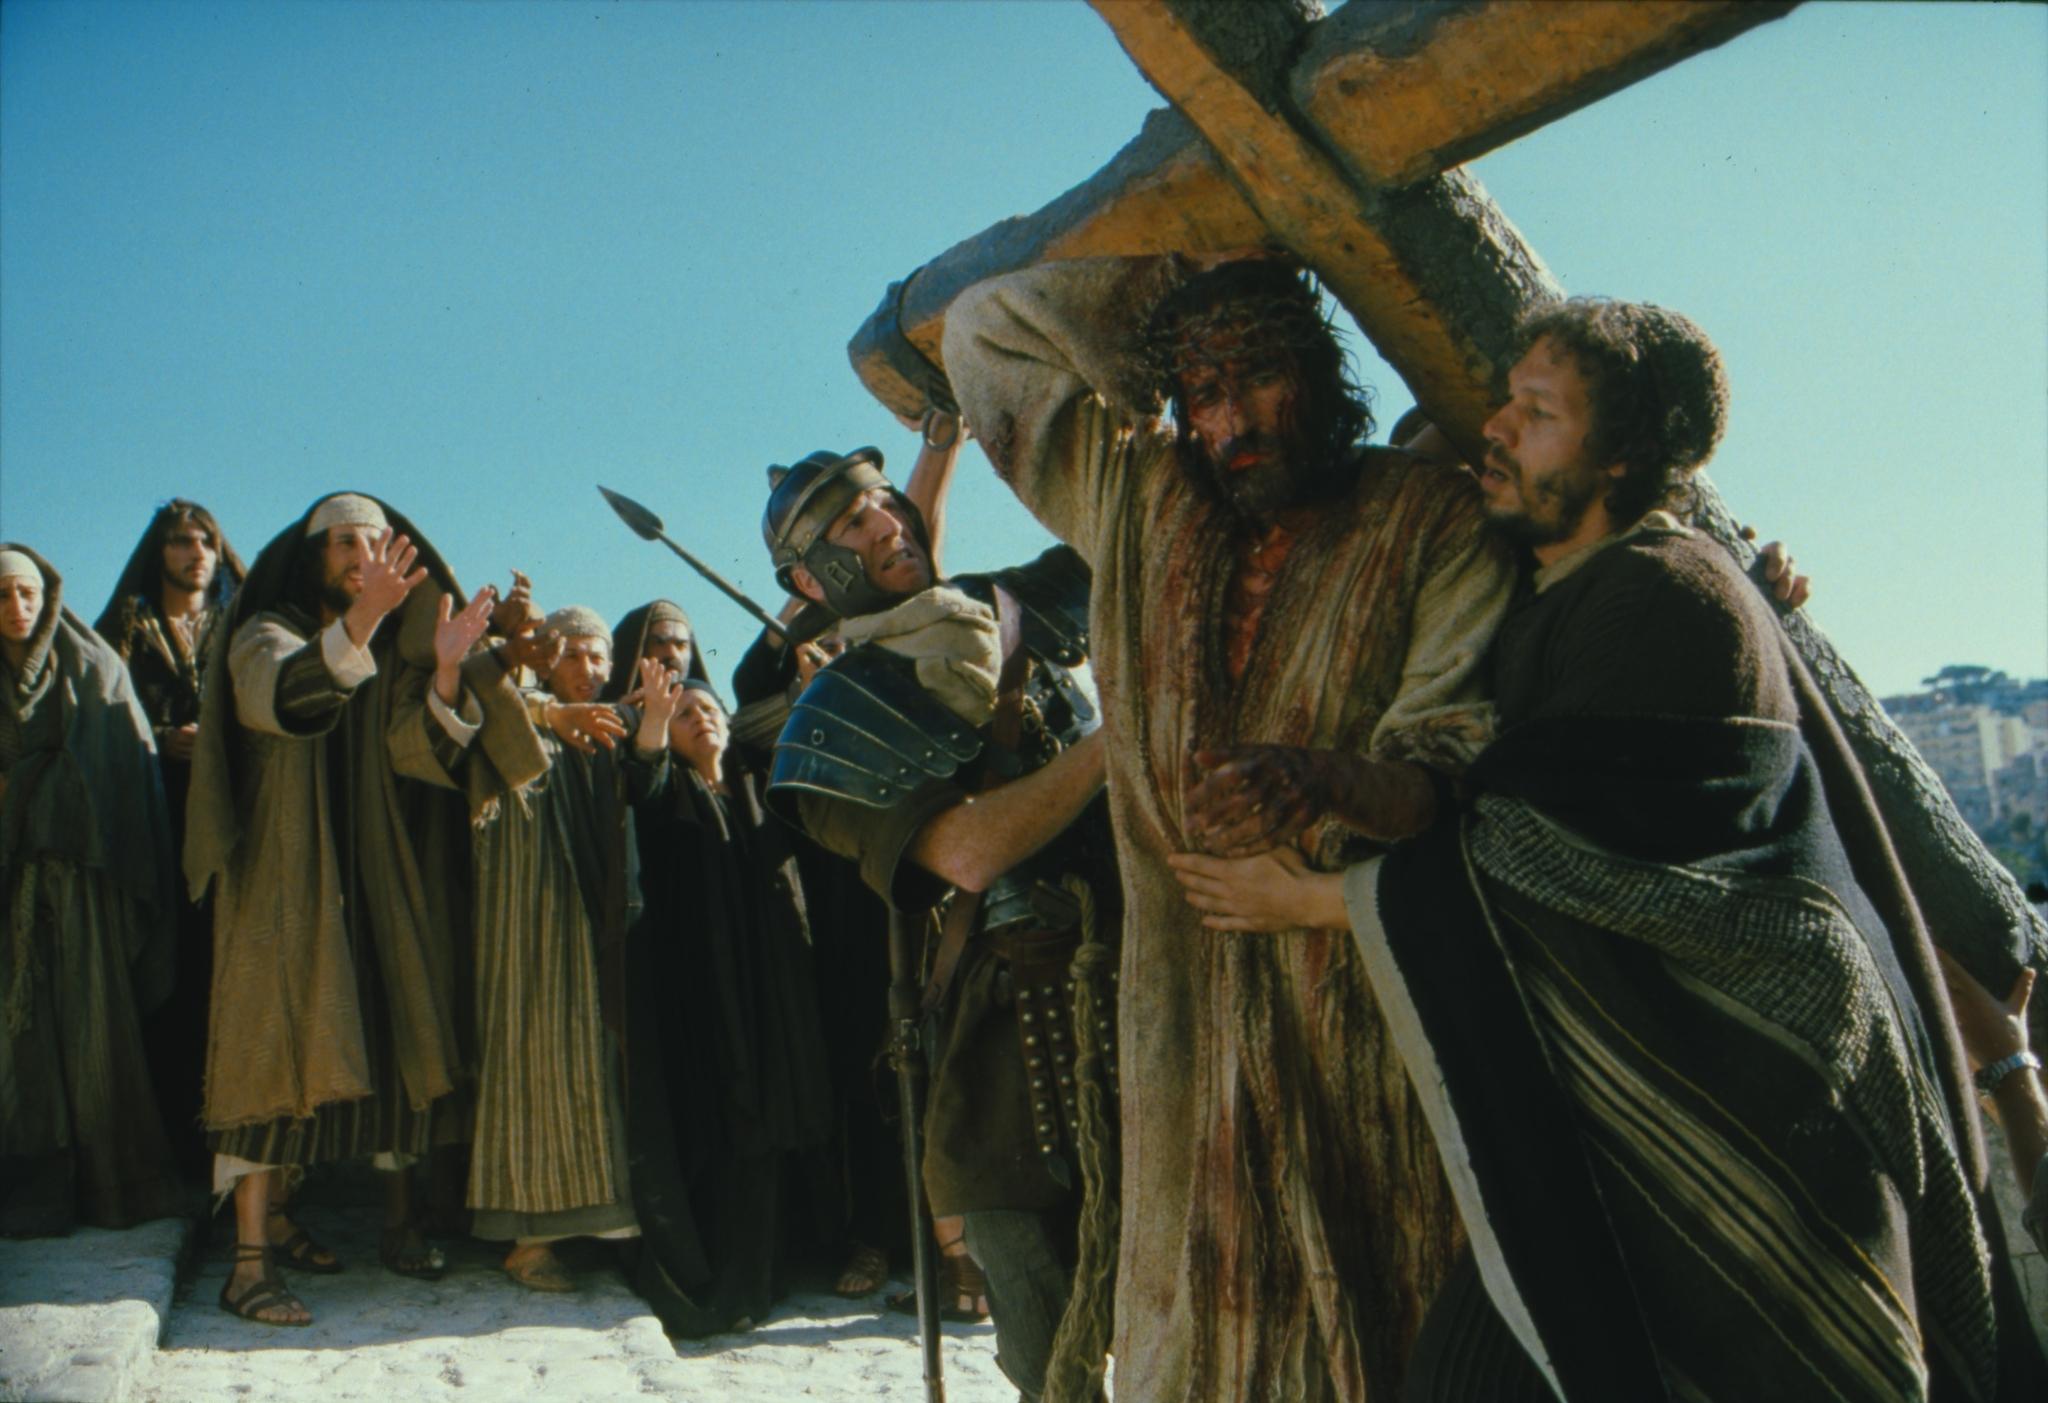 [44+] Jesus Carrying the Cross Wallpaper on WallpaperSafari